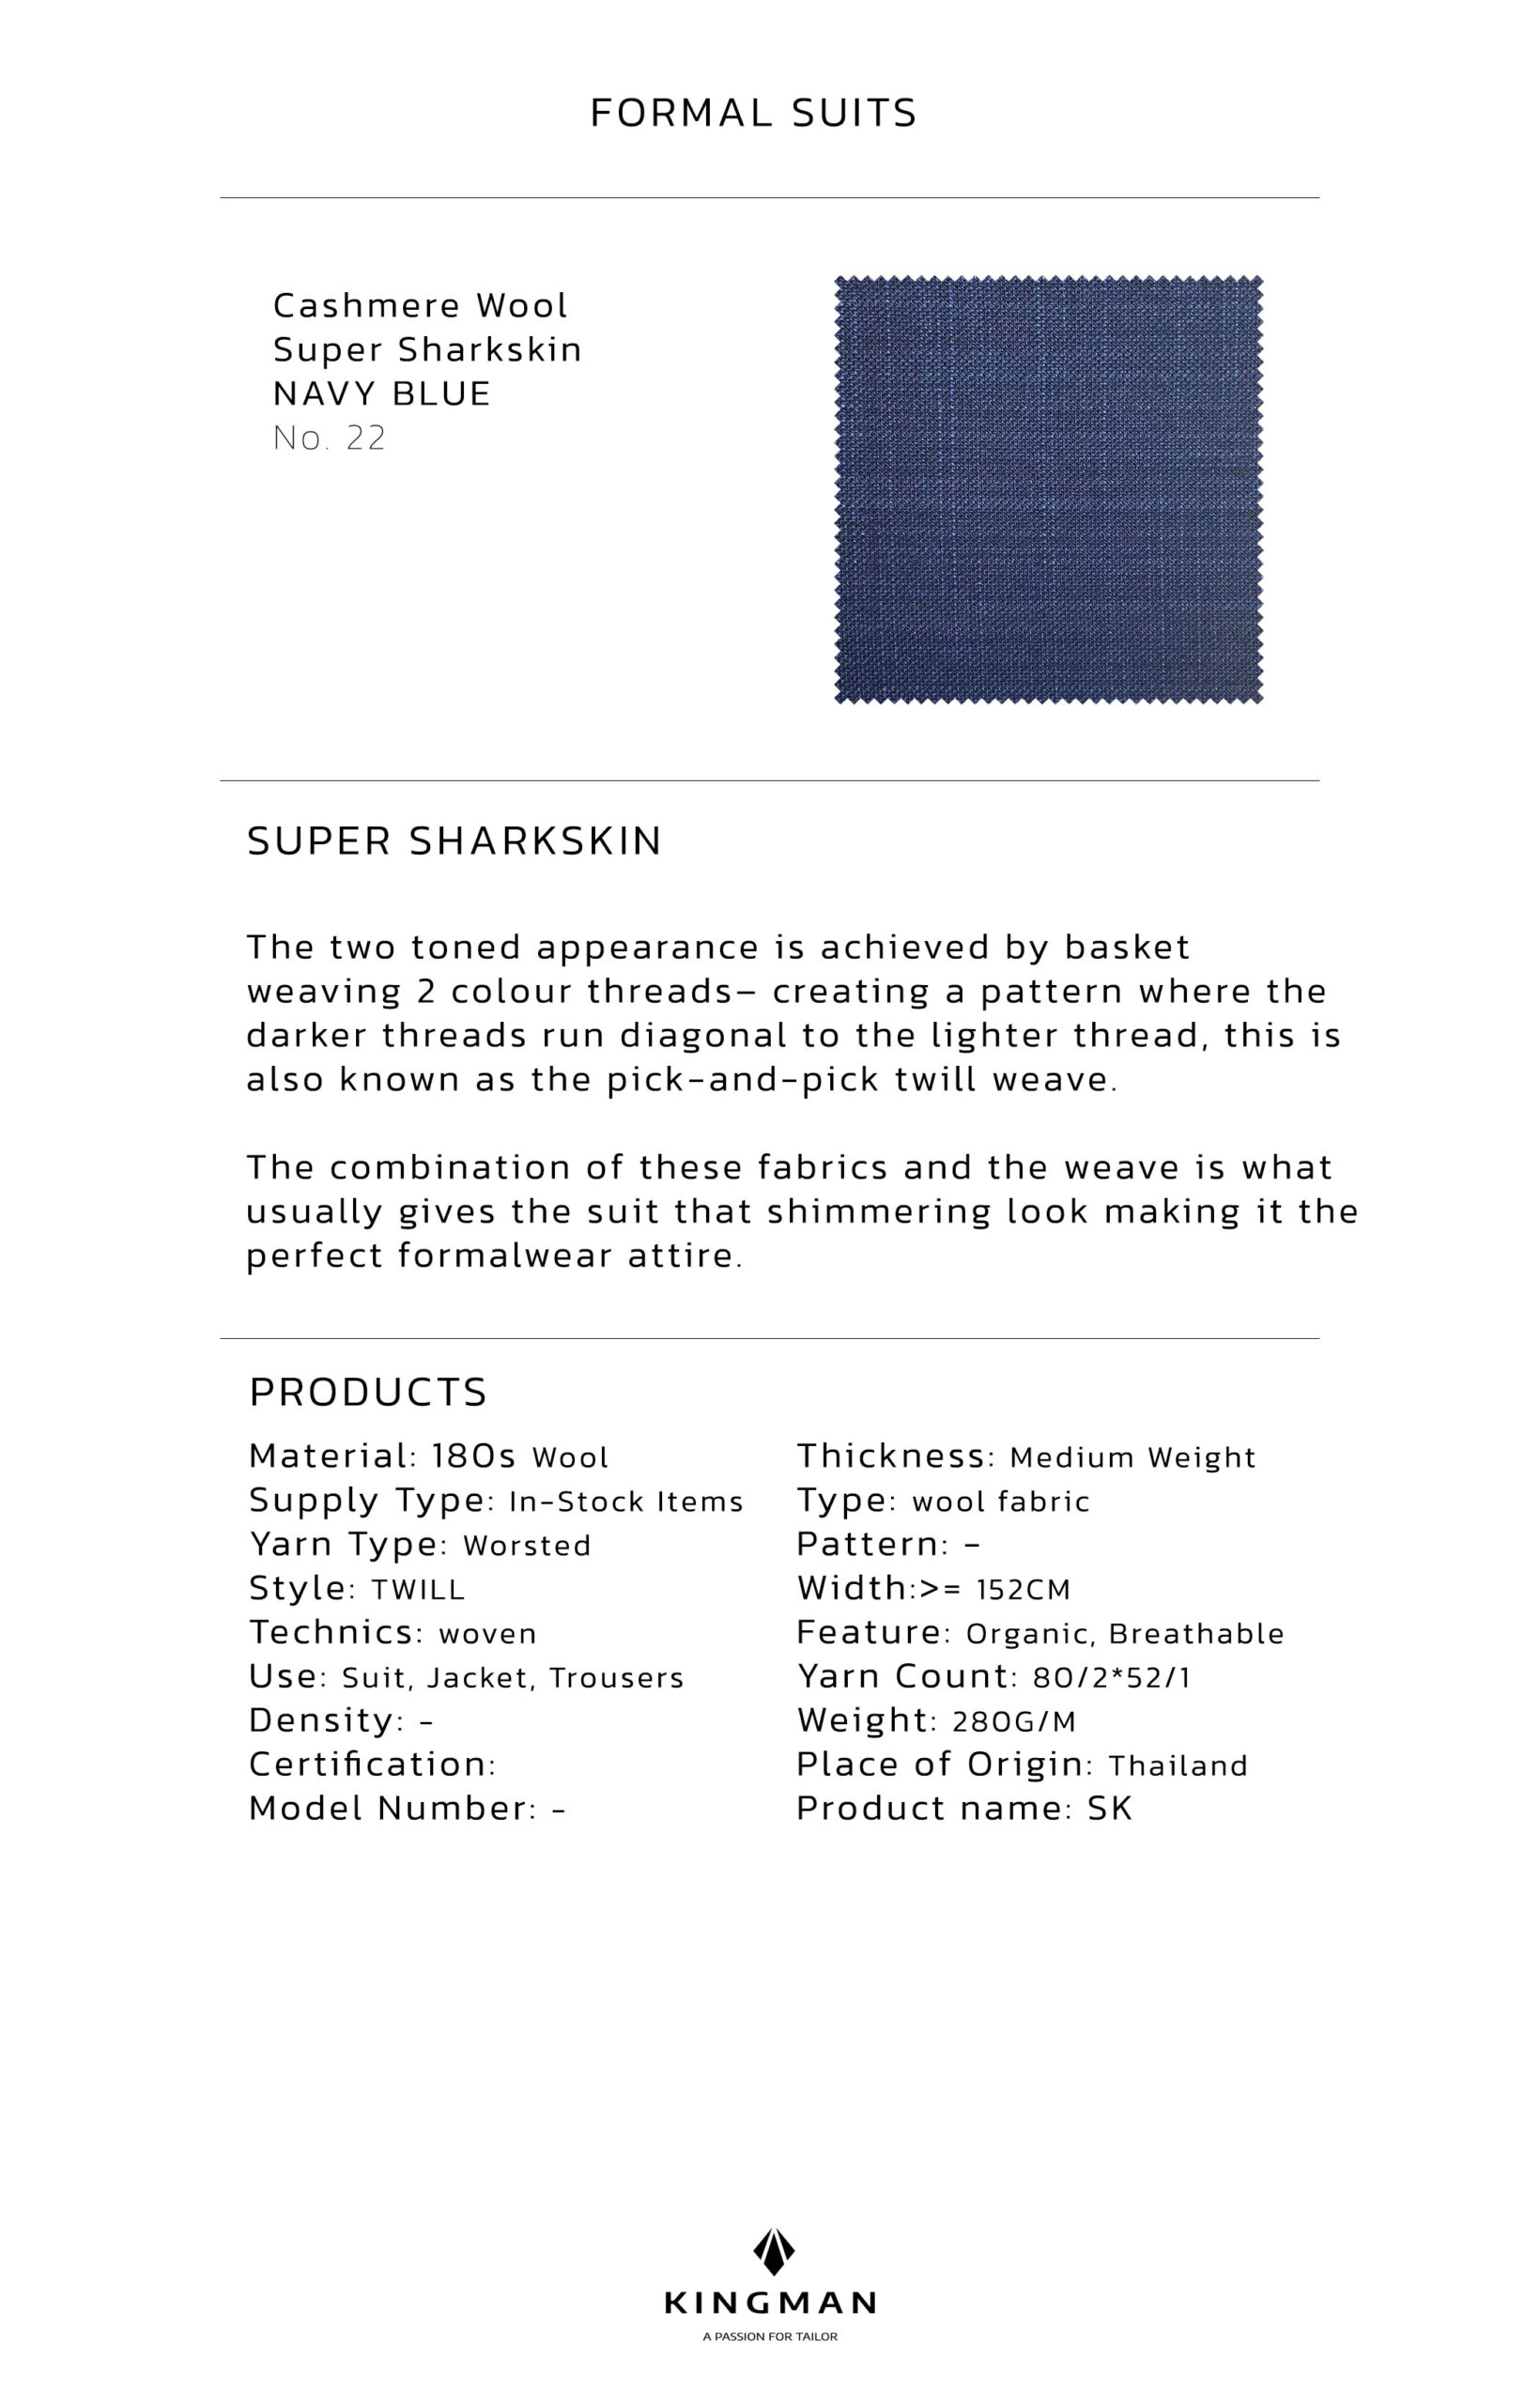 KINGMAN Cashmere Wool Fabric Super Sharkskin NAVY BLUE ผ้าตัดชุดสูท สีกรมน้ำเงิน กางเกง ผู้ชาย ผ้าตัดเสื้อ ยูนิฟอร์ม ผ้าวูล ผ้าคุณภาพดี กว้าง 60 นิ้ว ยาว 1 เมตร